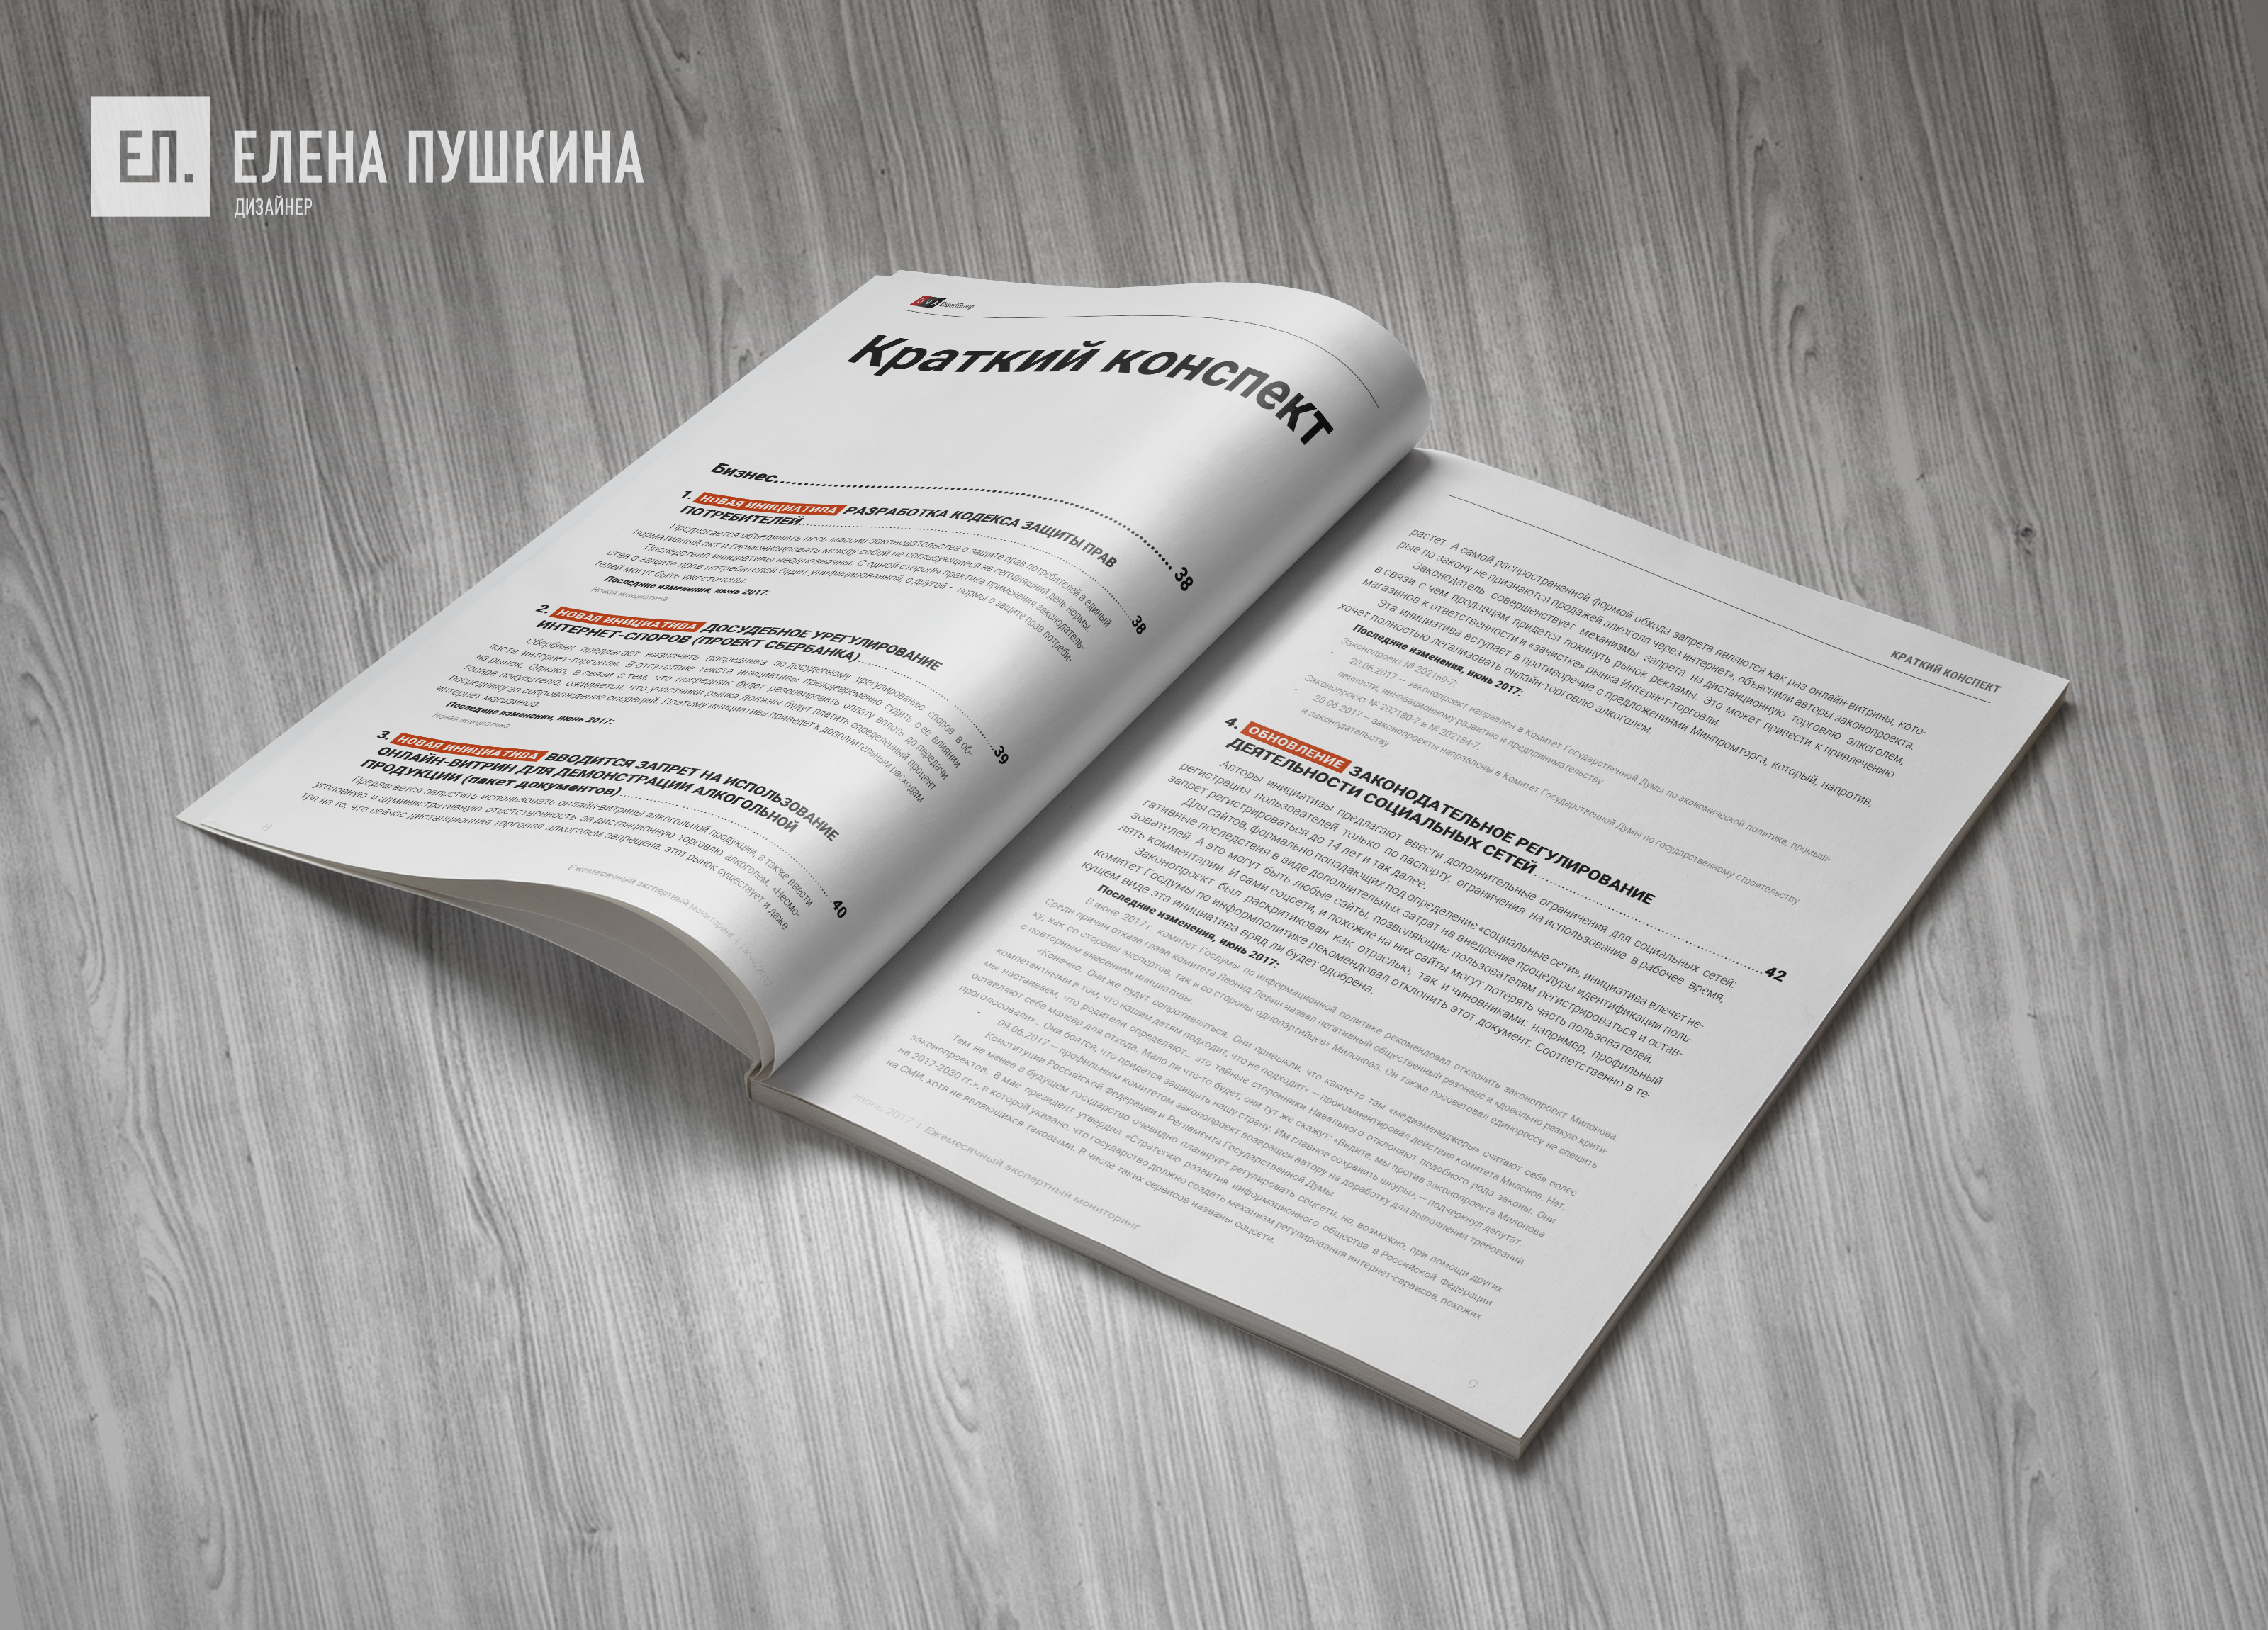 Аналитический отчёт «Ежемесячный экспертный отчёт» — дизайн с «нуля» обложки, макета, инфографики и вёрстка брошюры Дизайн каталогов Портфолио